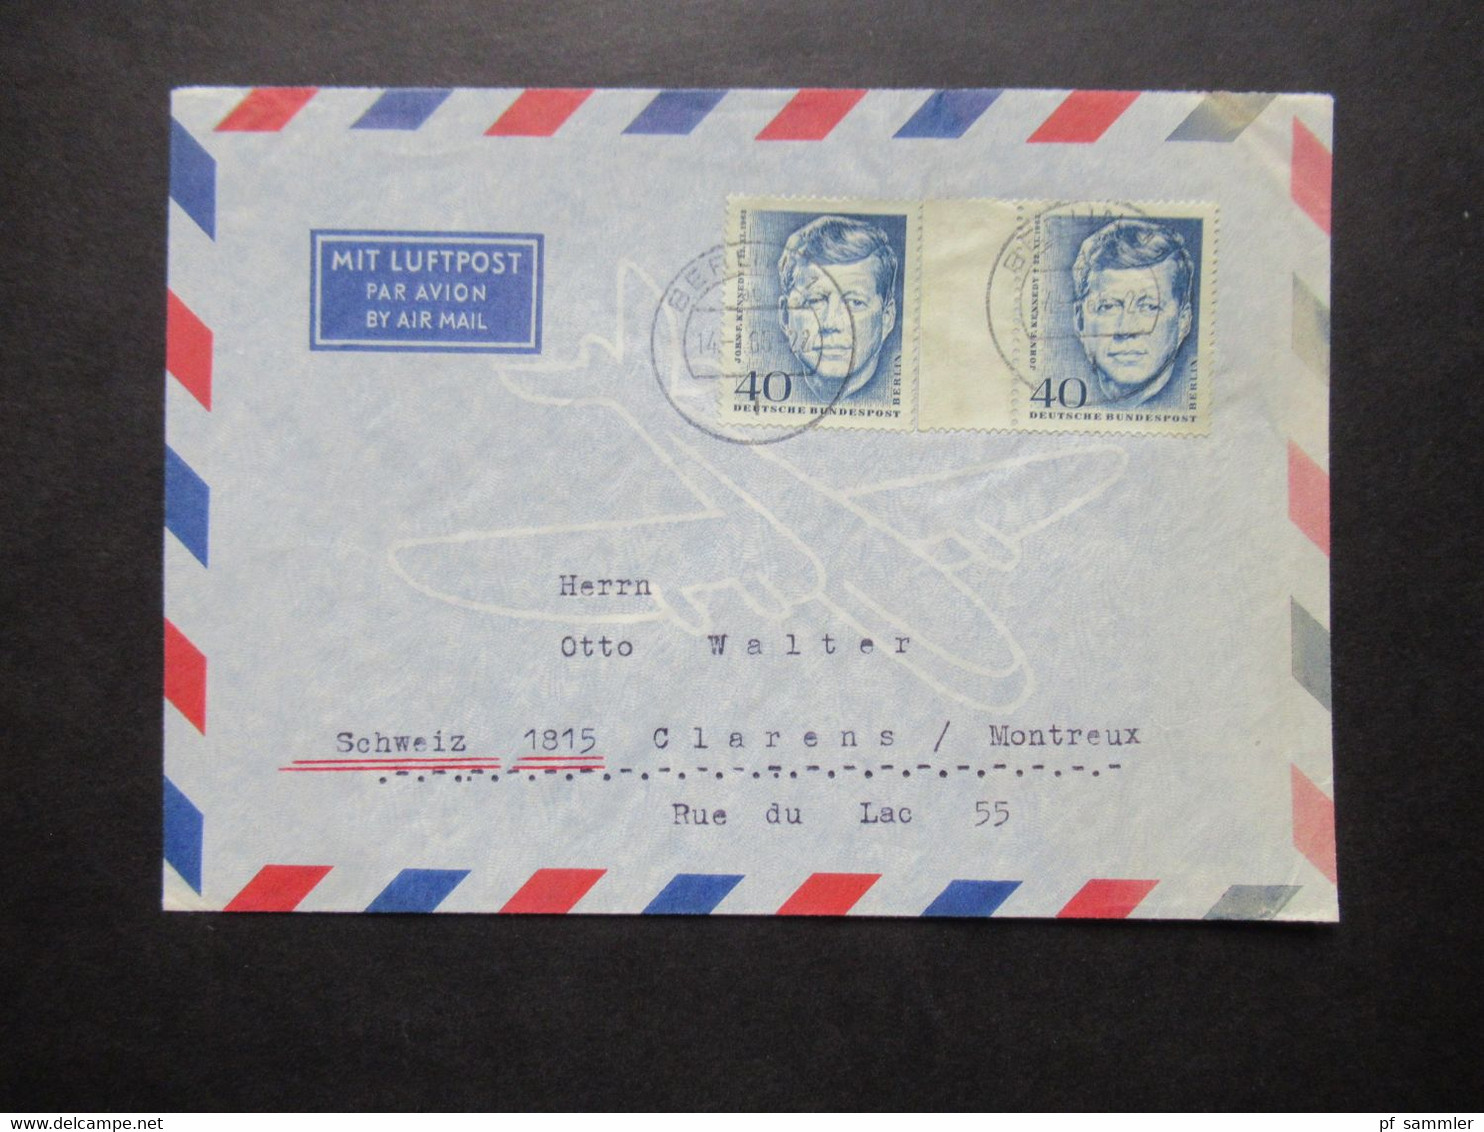 1964 Berlin (West) John F. Kennedy Nr.241 (2) MeF Auslandsbrief Mit Luftpost Berlin - Clarens Montreux Schweiz - Cartas & Documentos